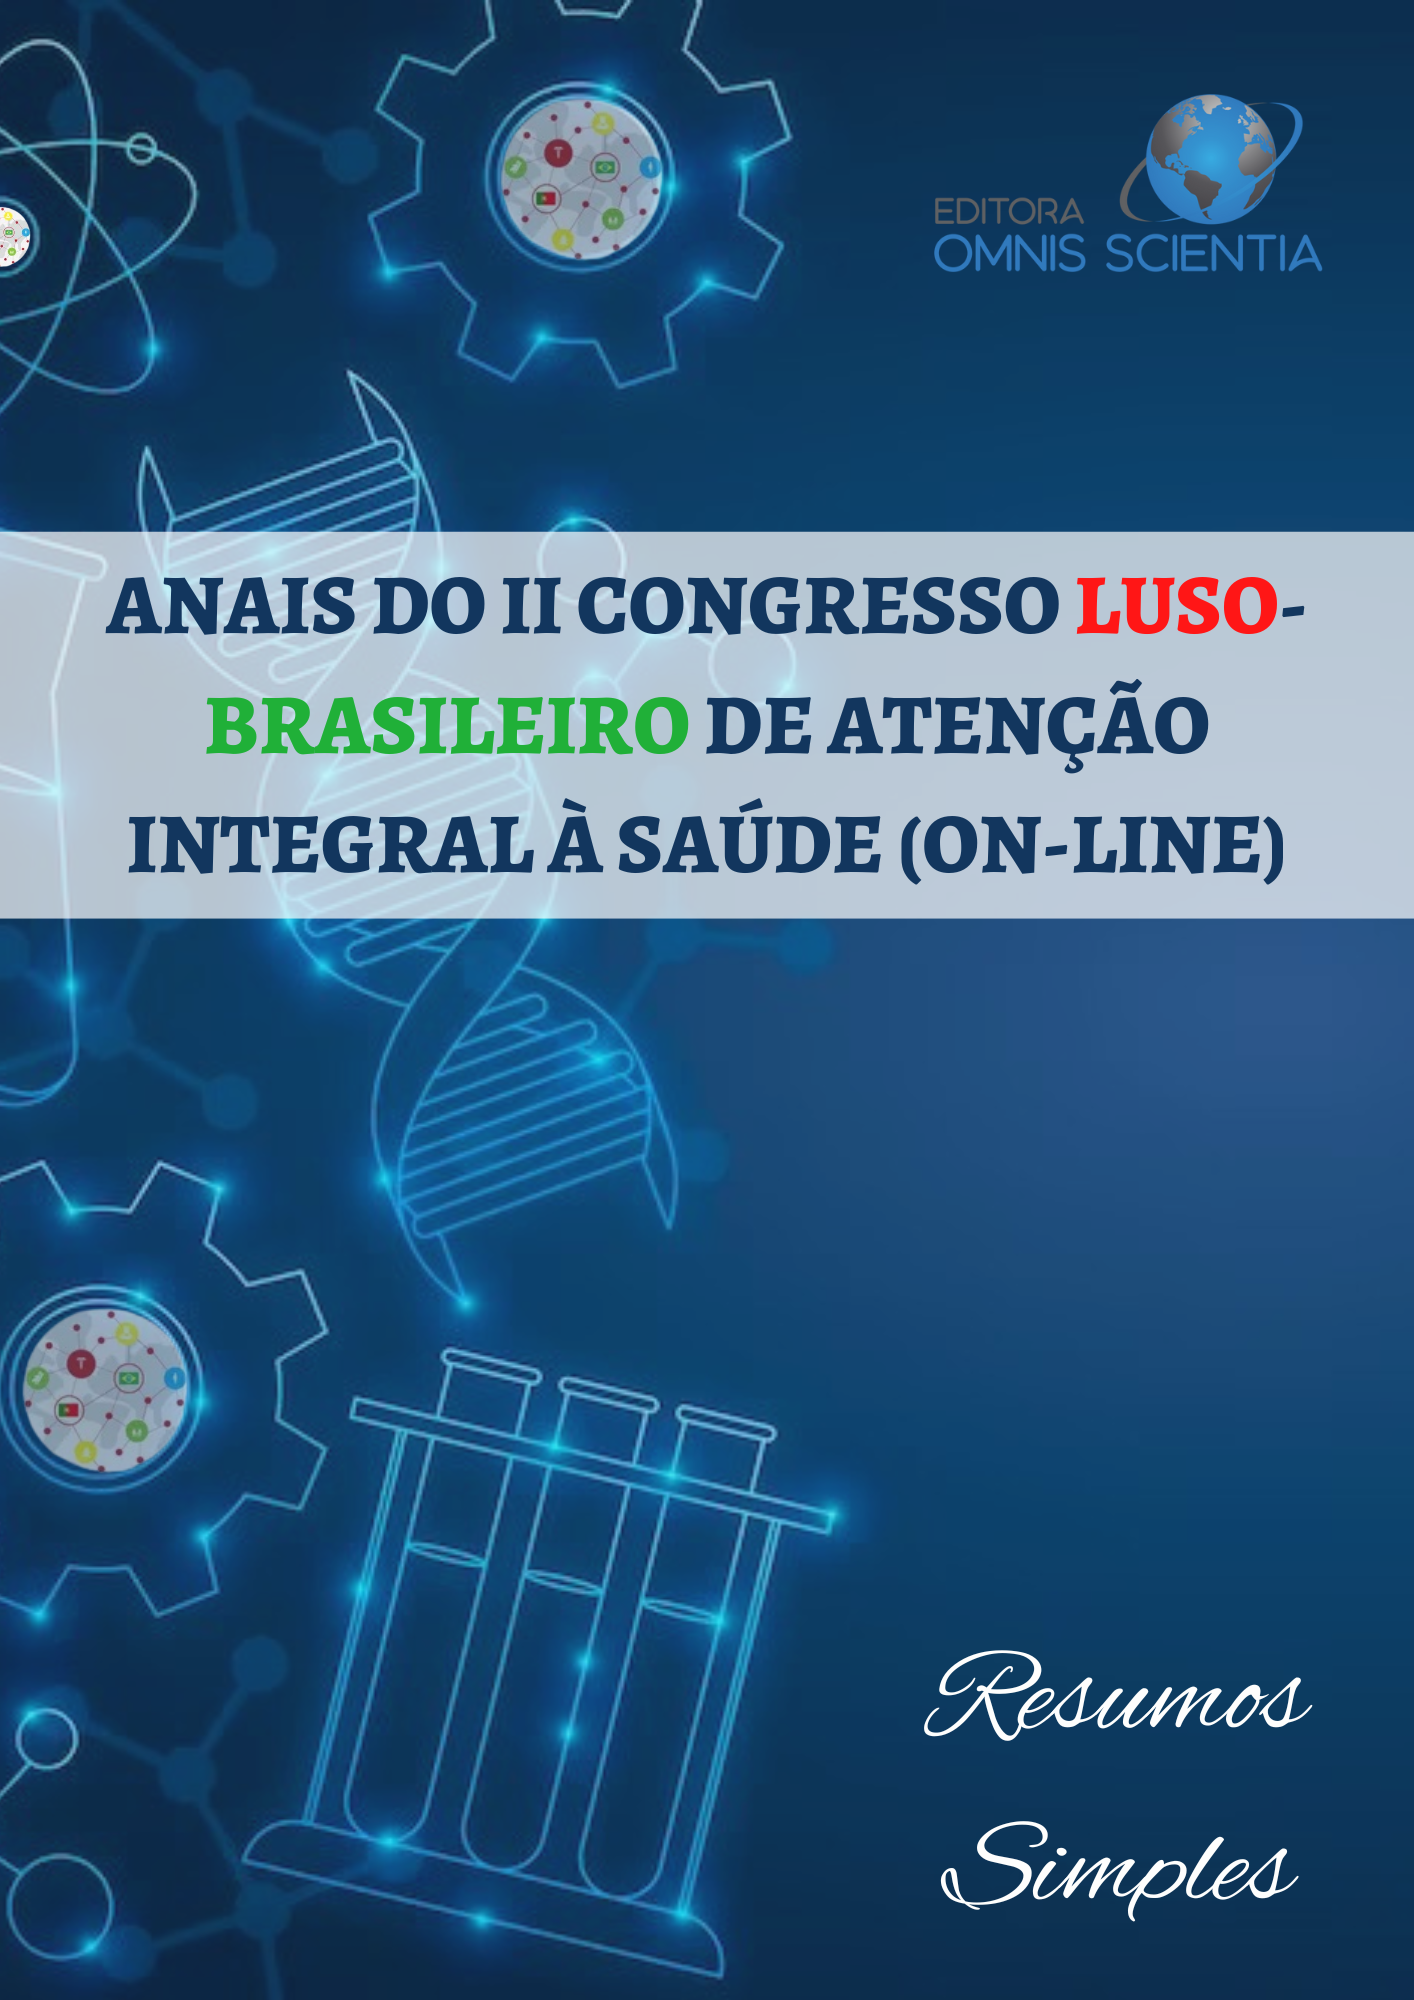 ANAIS DO II CONGRESSO LUSO-BRASILEIRO DE ATENÇÃO INTEGRAL À SAÚDE (ON-LINE) – RESUMOS SIMPLES